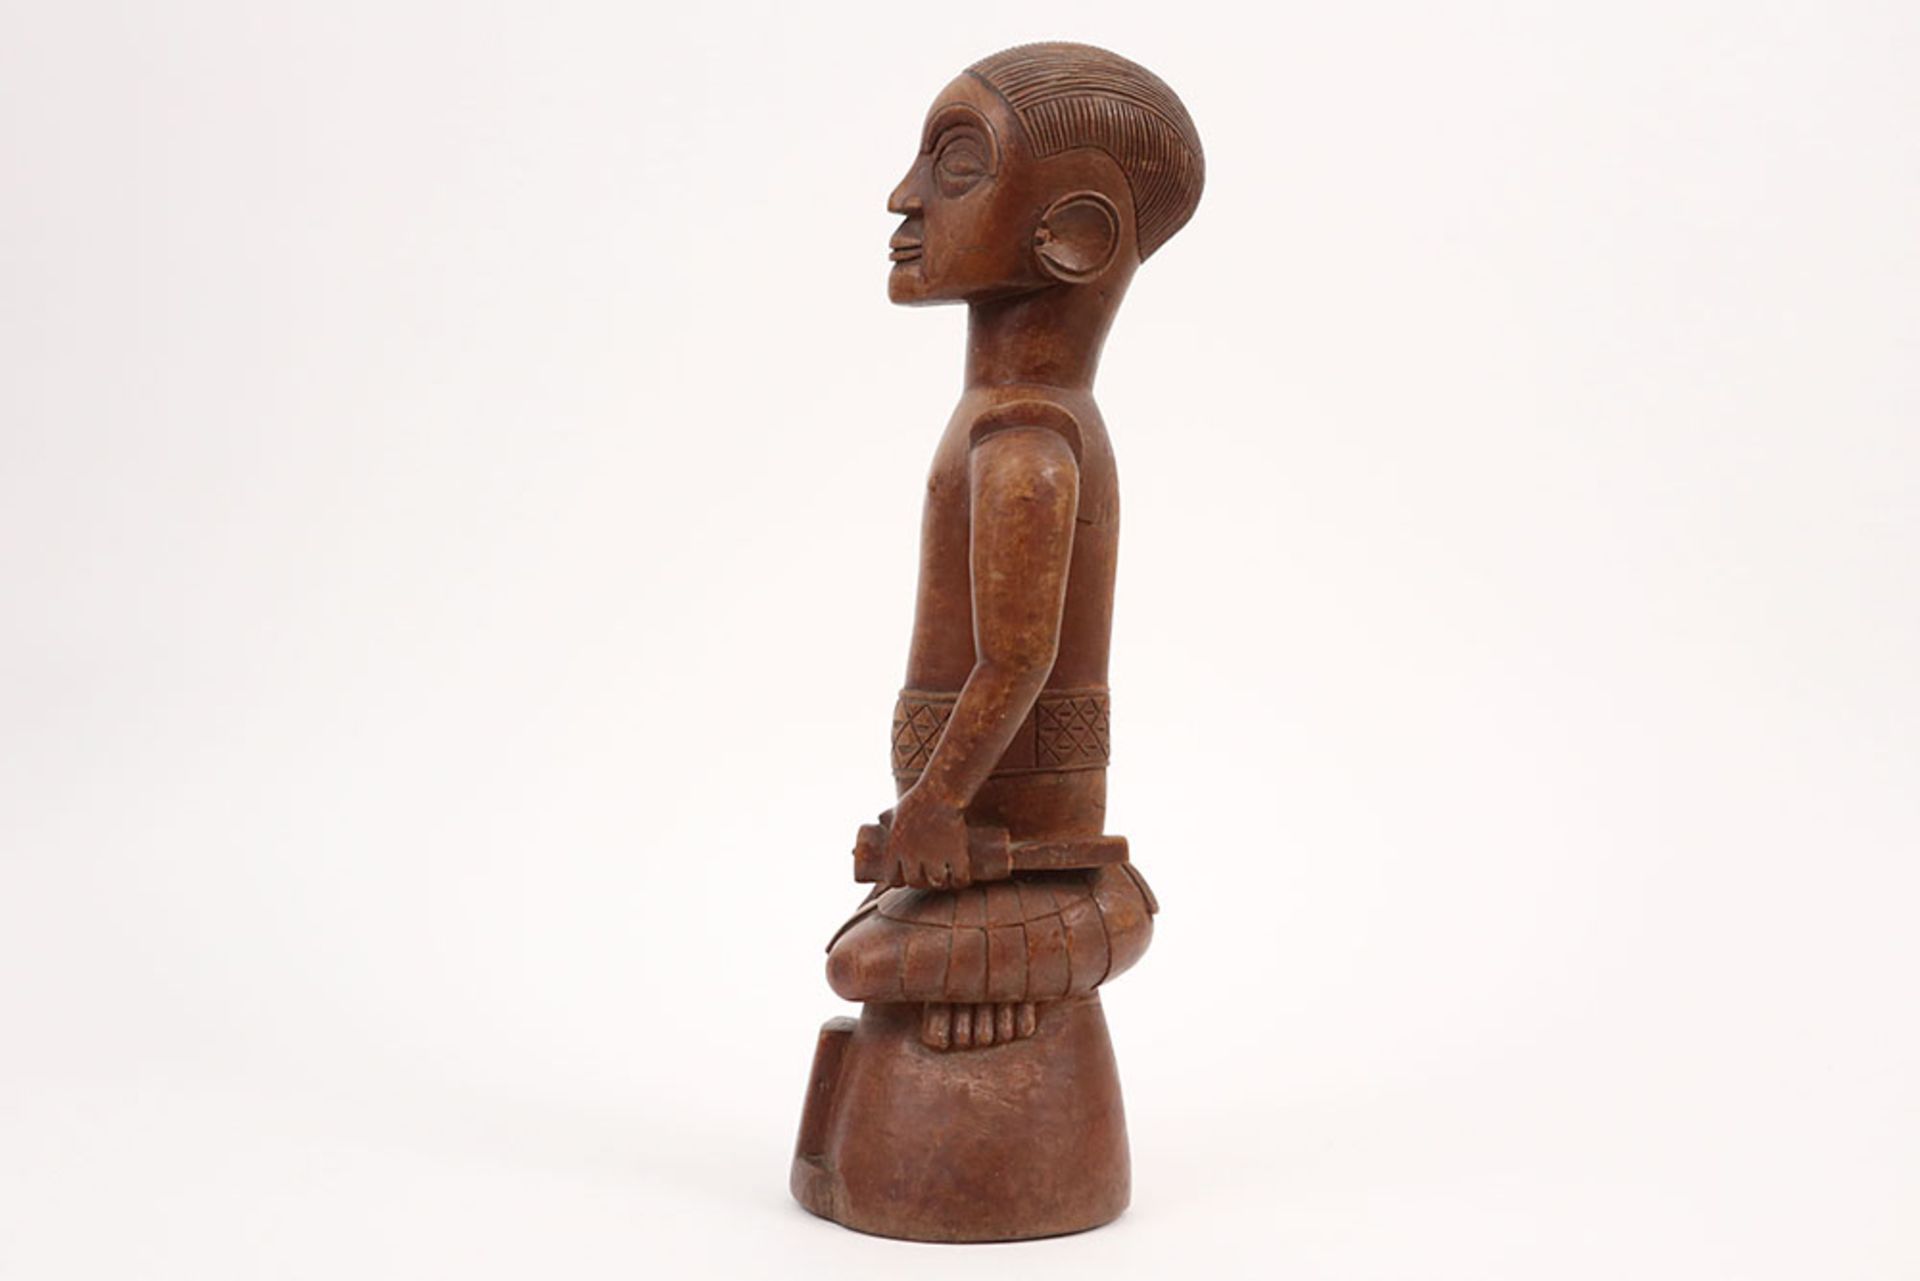 20th Cent. Congolese carver sculpture in wood || AFRIKA / KONGO - 20° EEUW sculptuur in hout met - Image 3 of 4